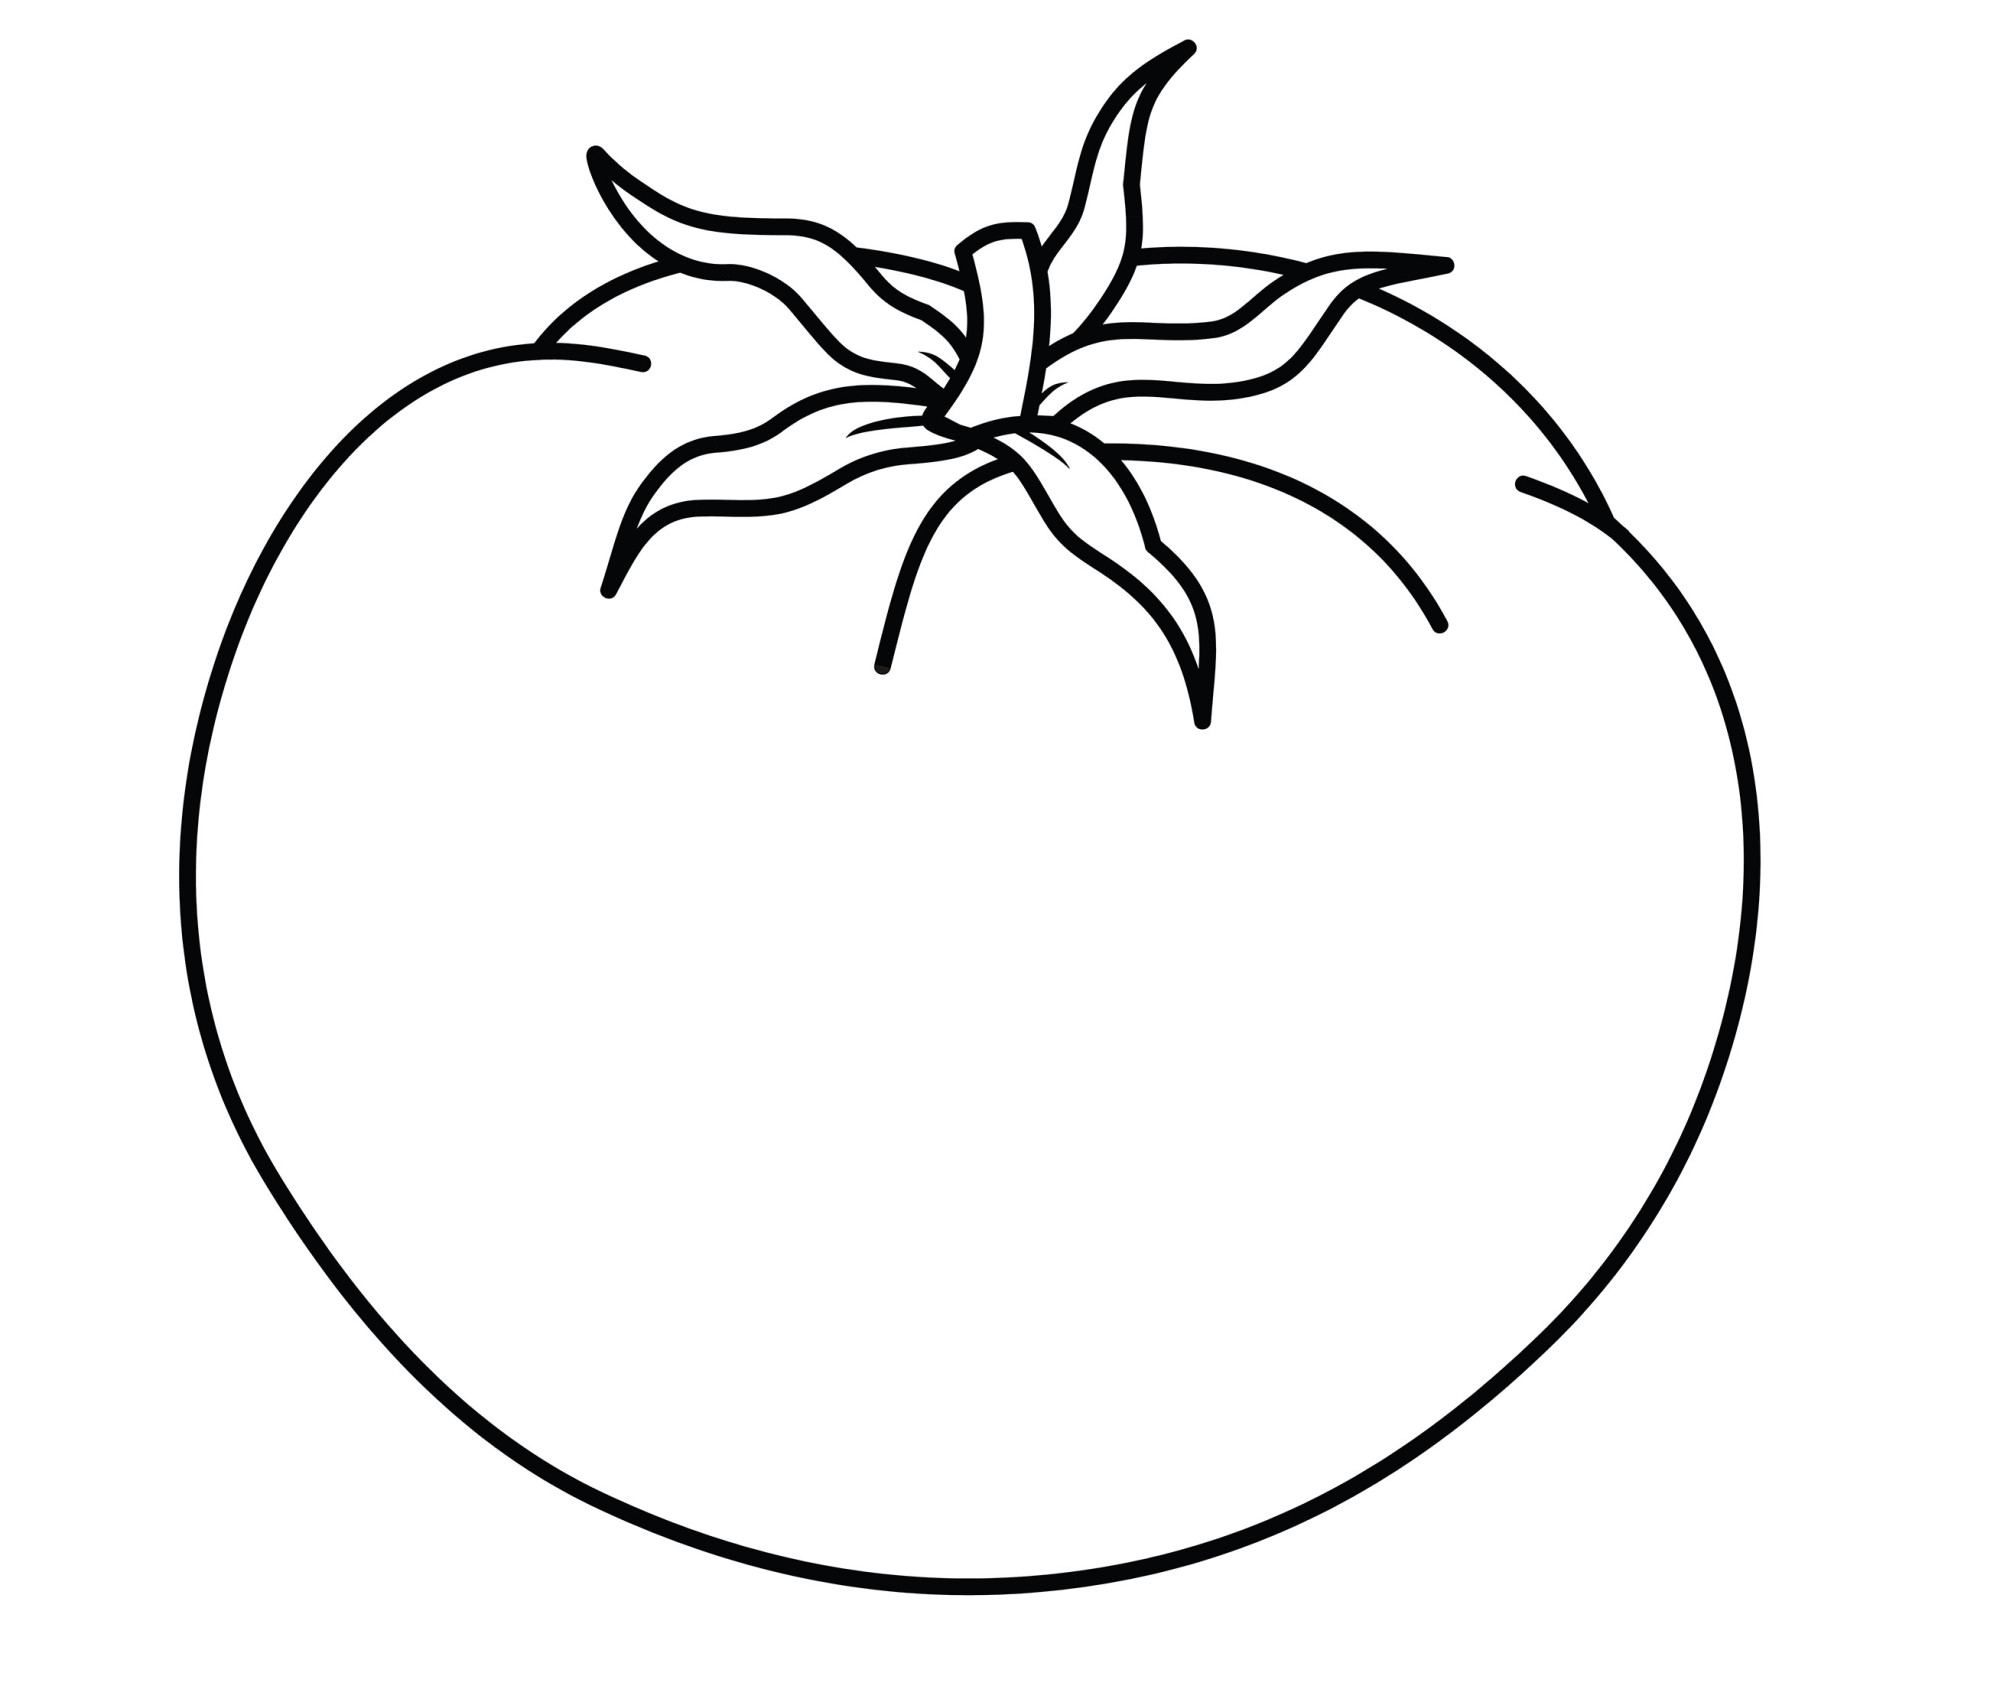 Раскраска для детей: томат лазурный гигант